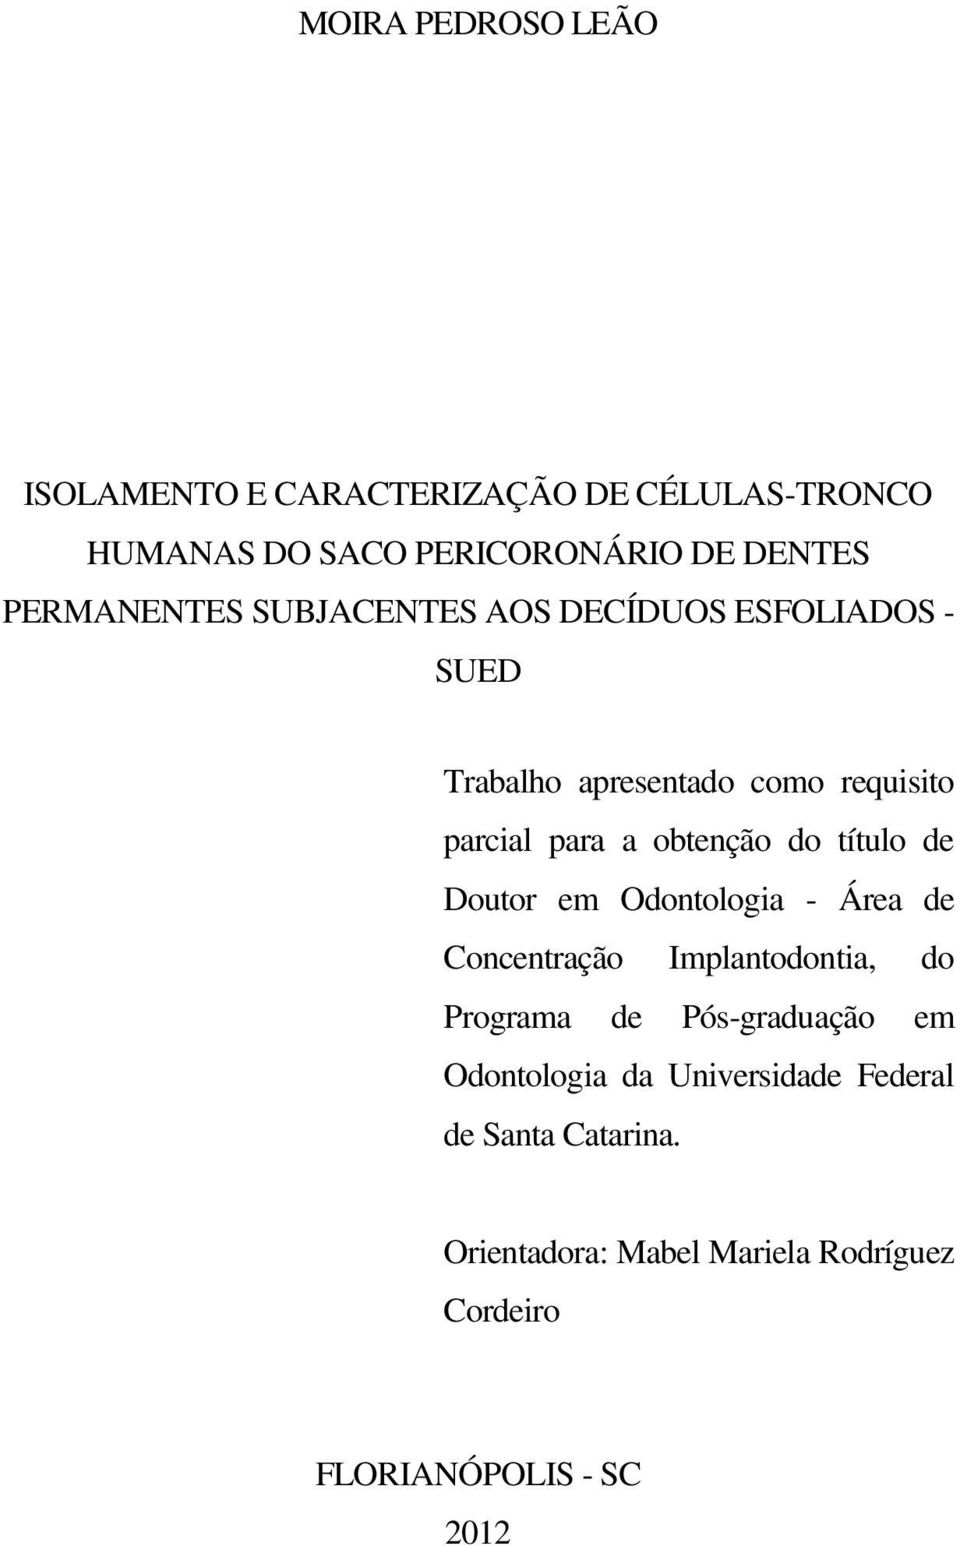 obtenção do título de Doutor em Odontologia - Área de Concentração Implantodontia, do Programa de Pós-graduação